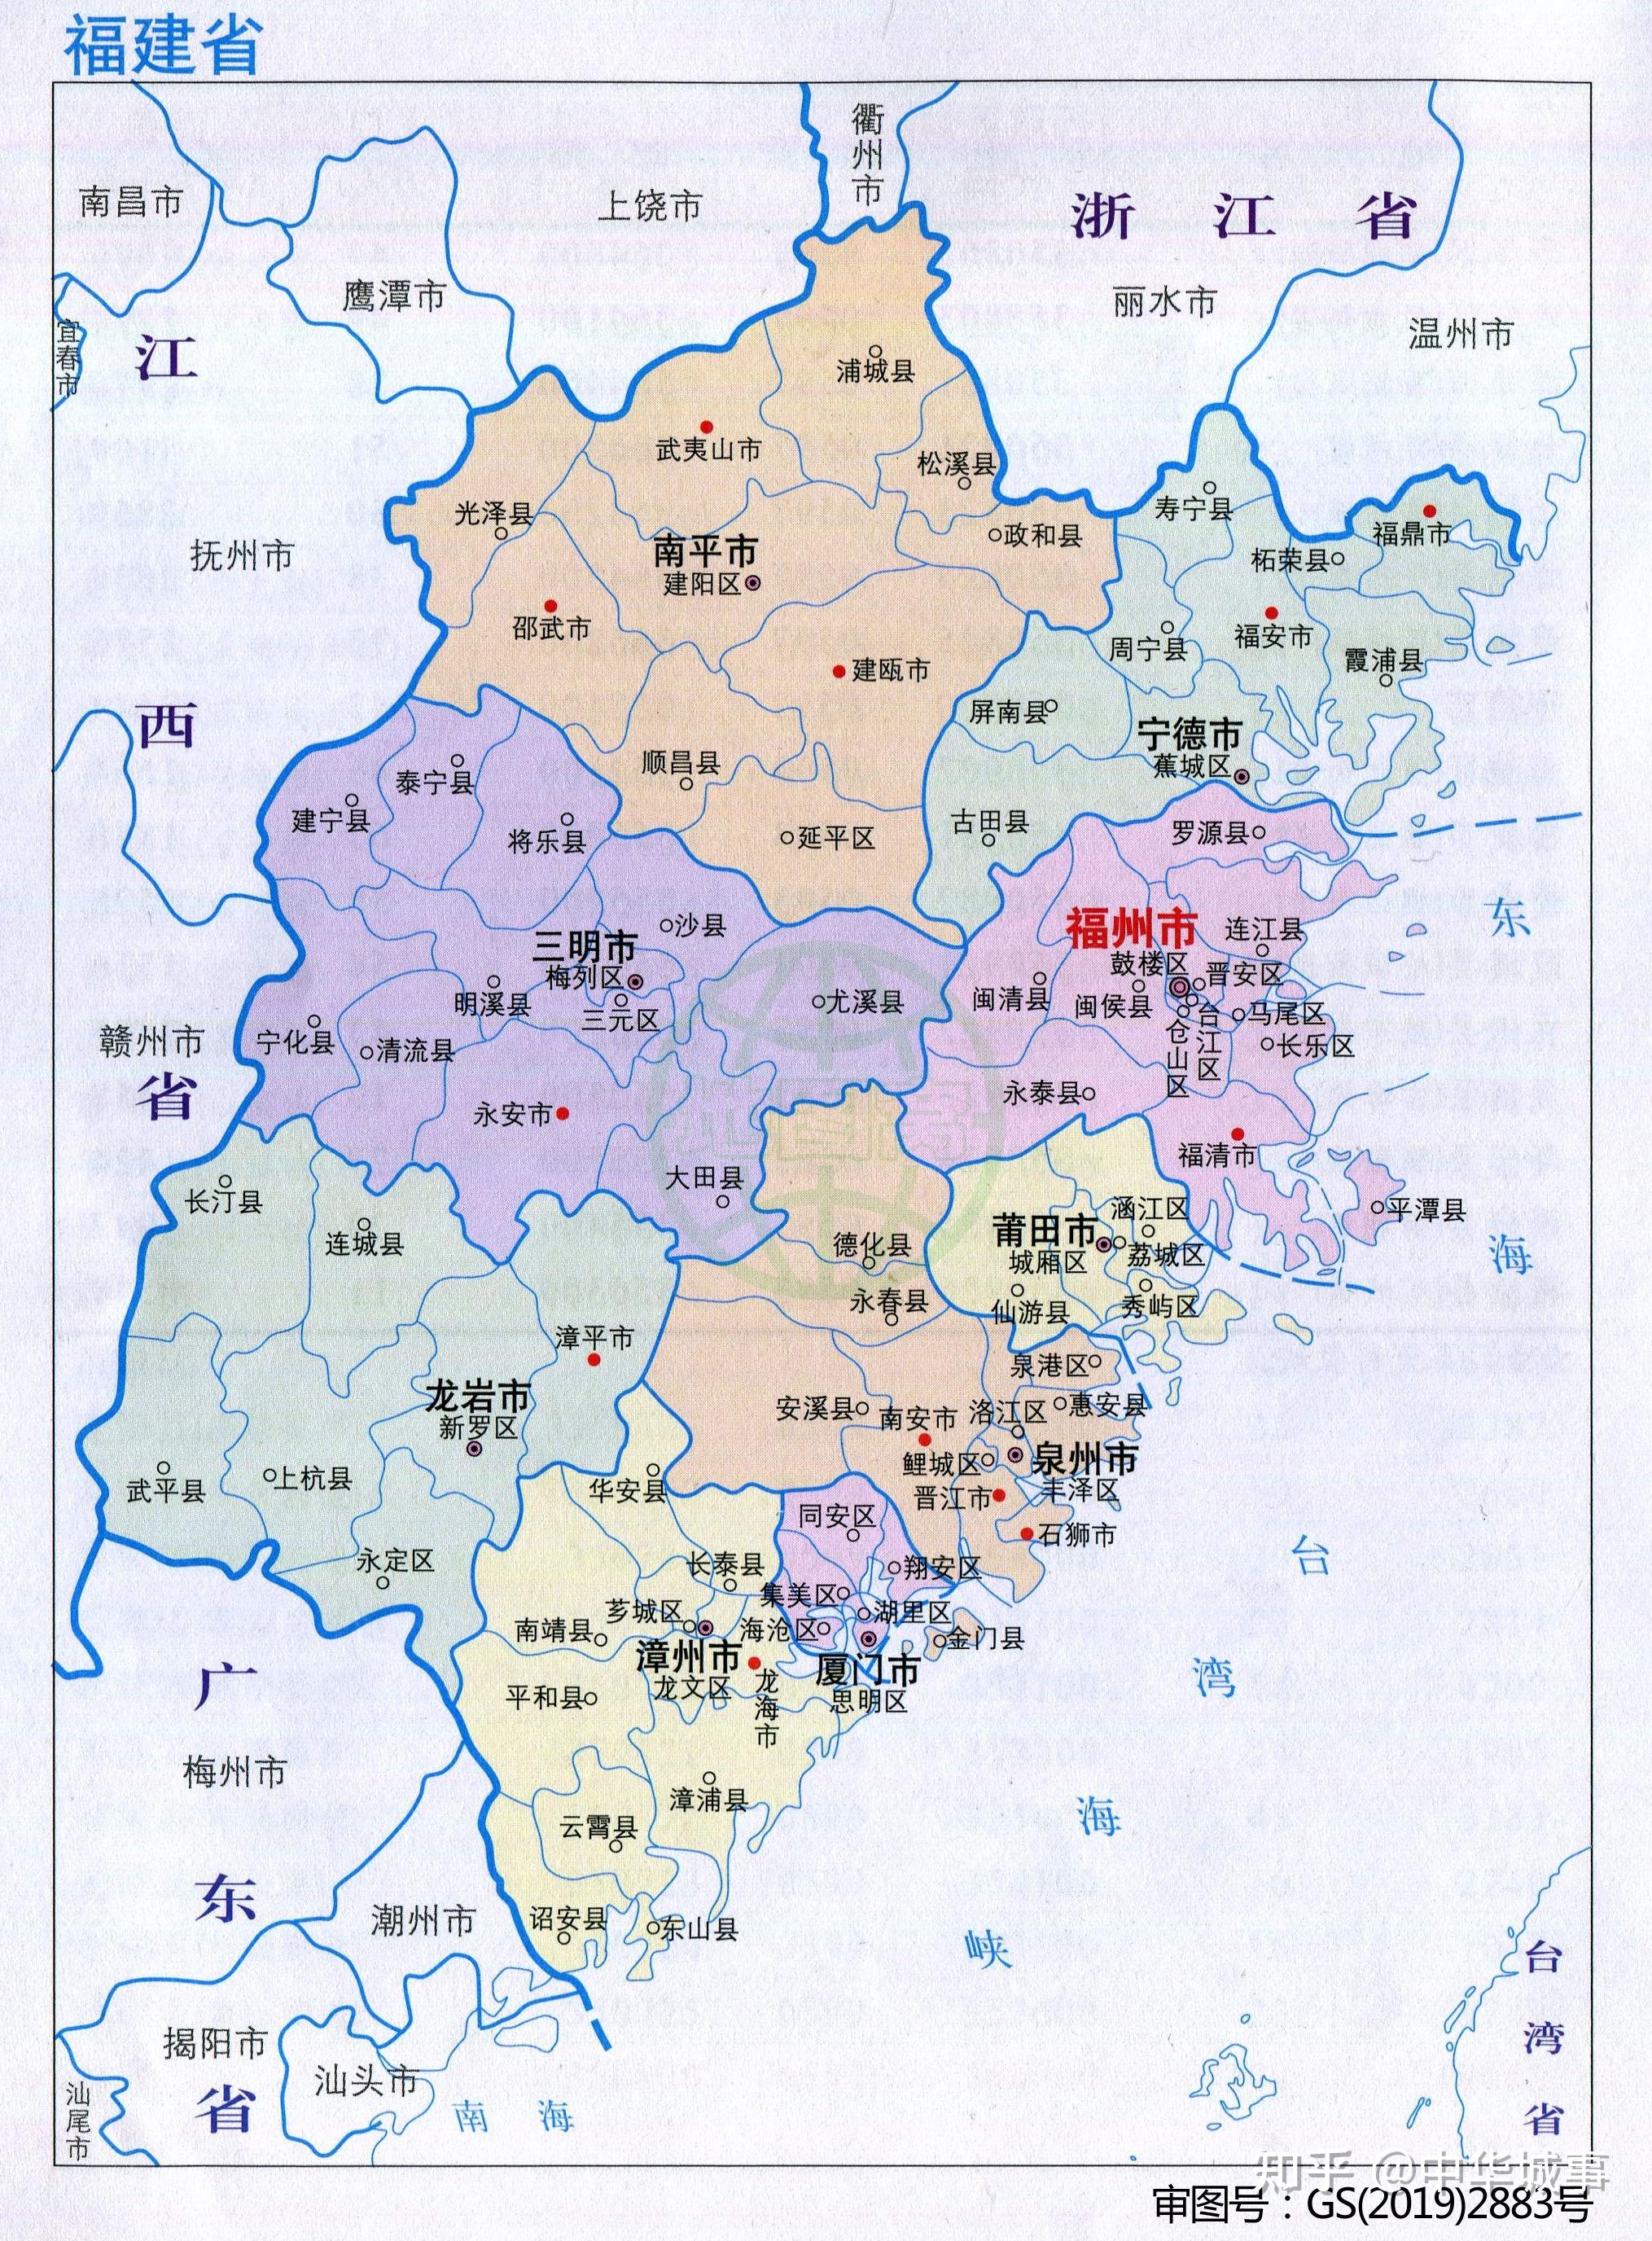 福建行政区划图